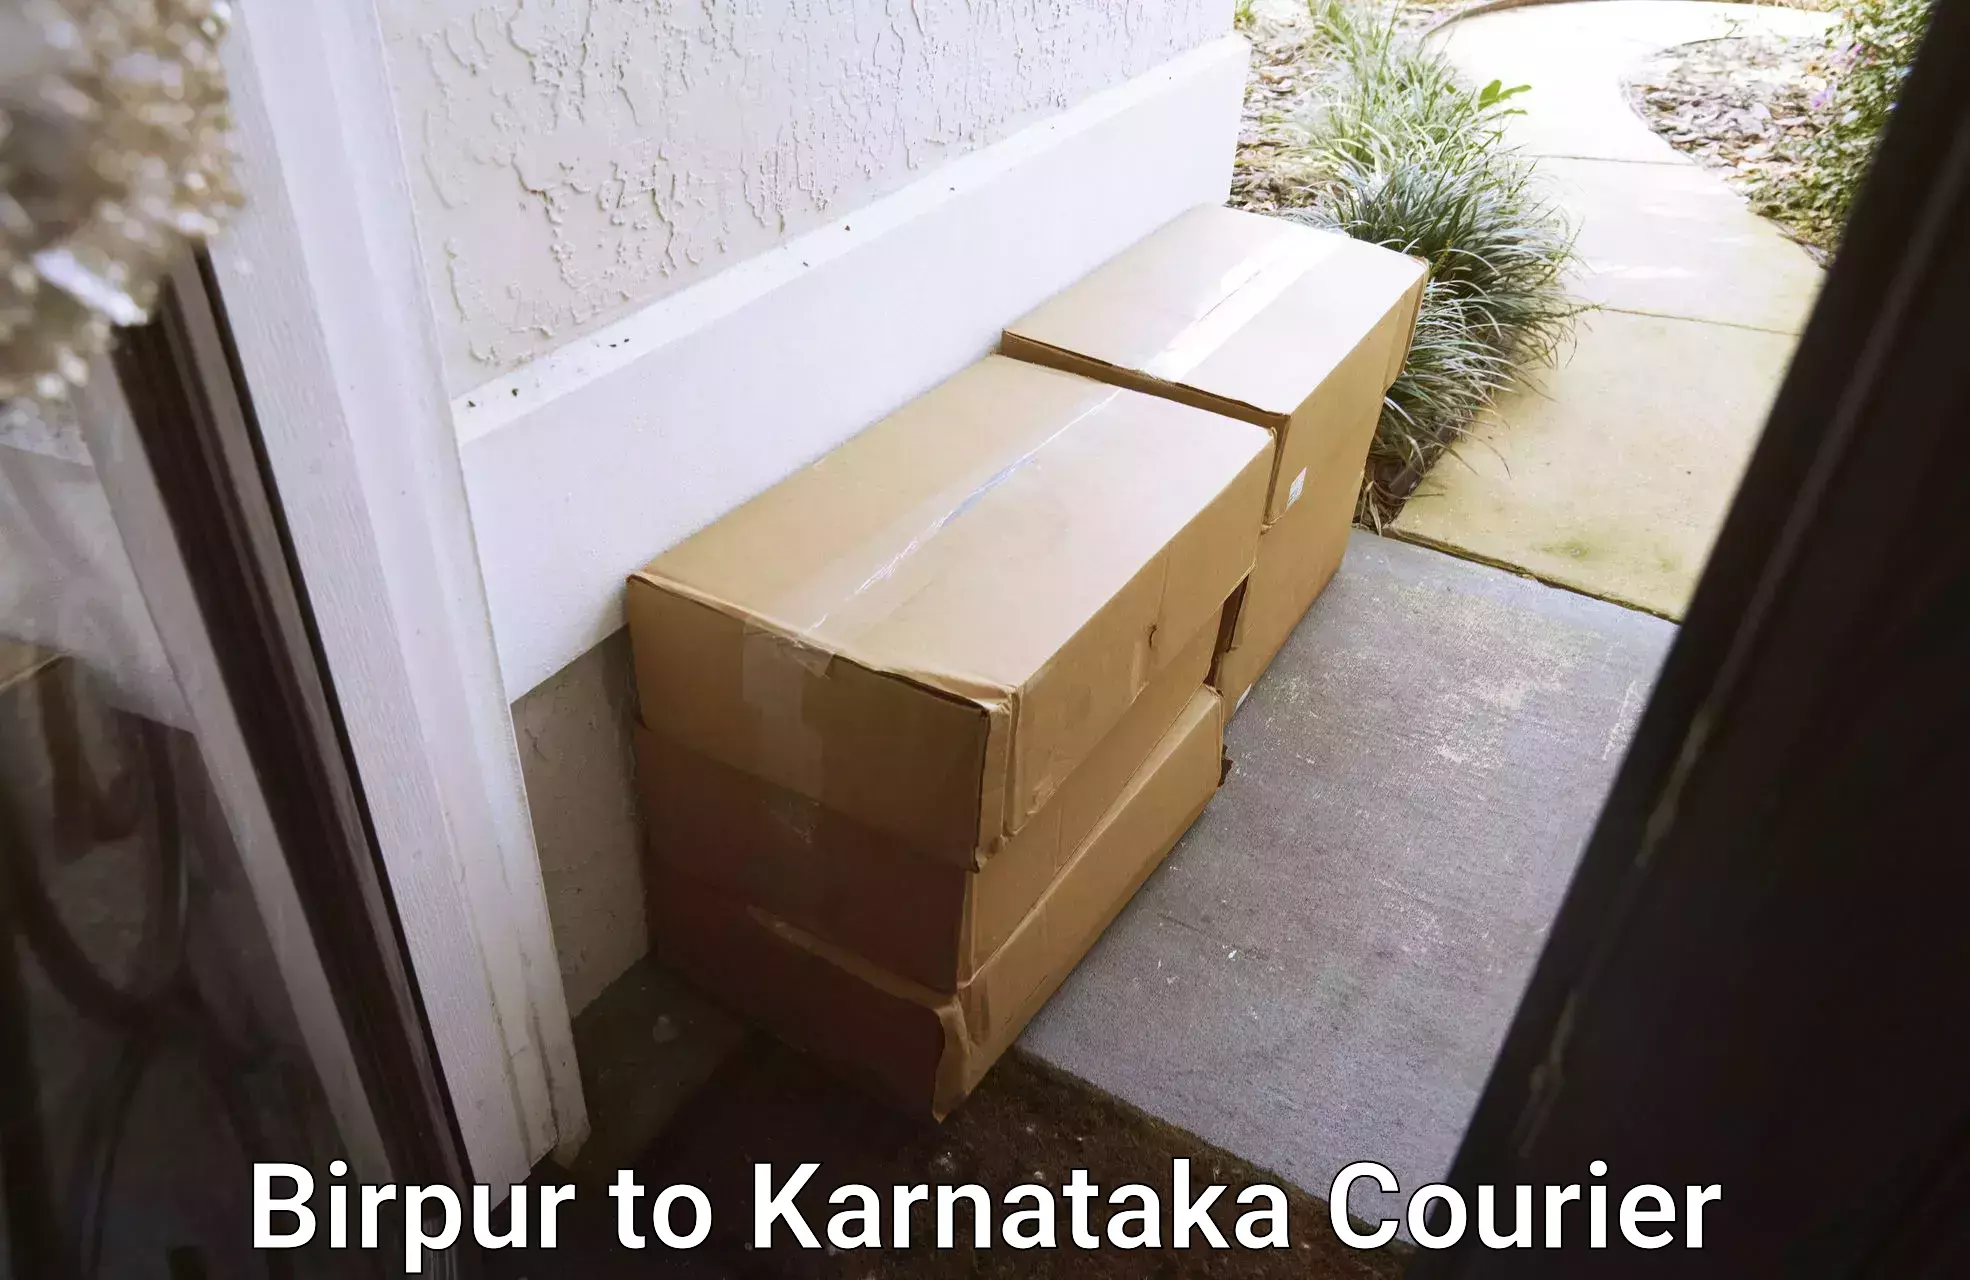 Stress-free furniture moving Birpur to Karnataka